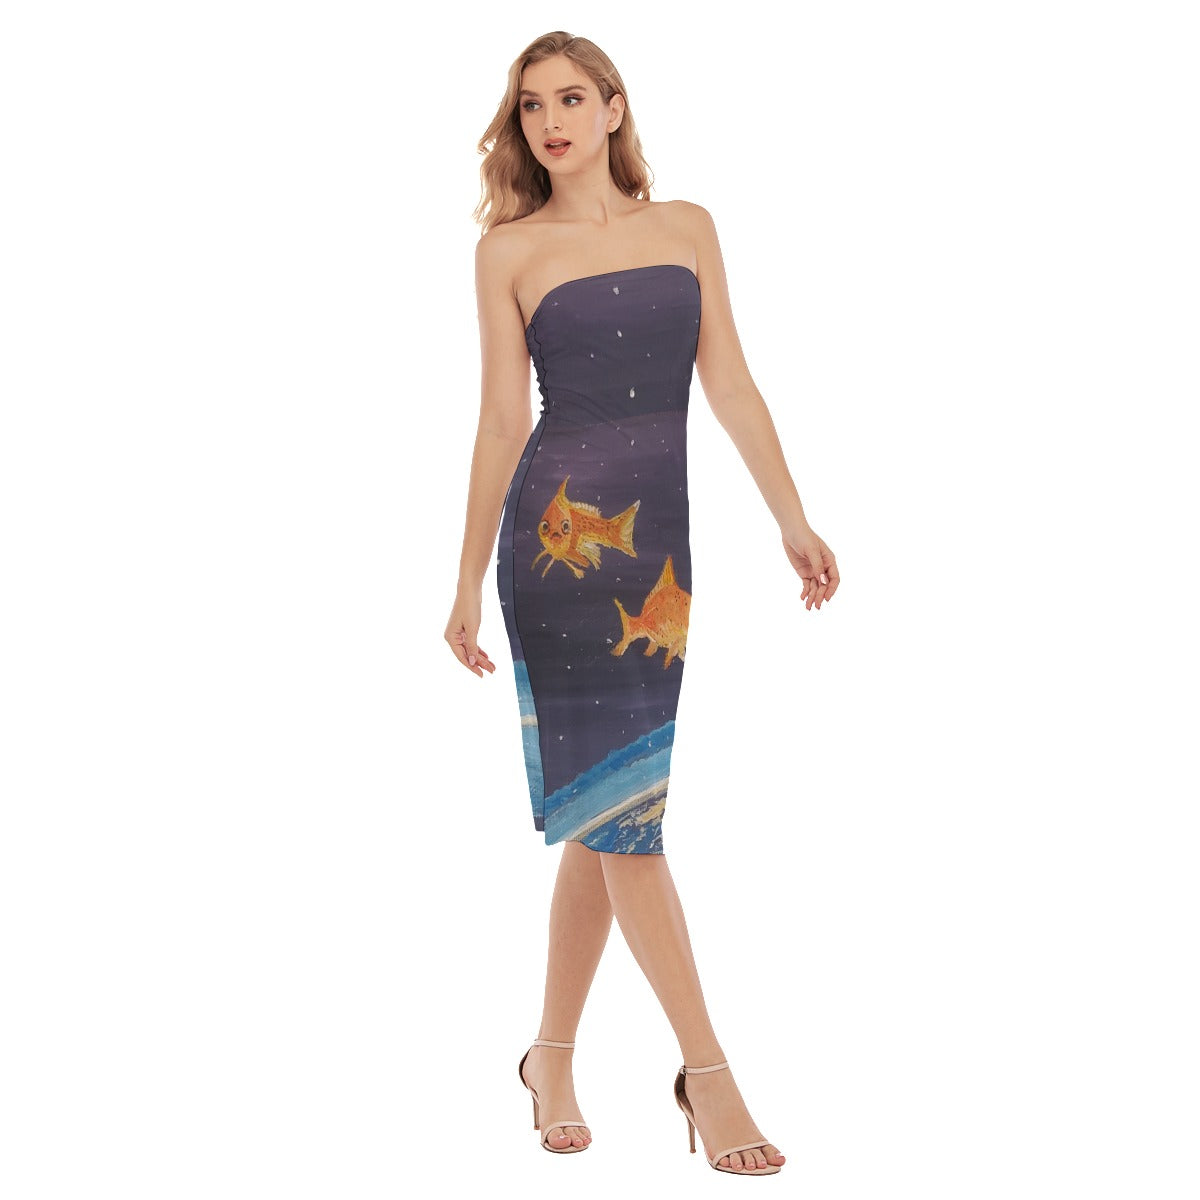 Fish in Space Women's Side Split Tube Top Dress